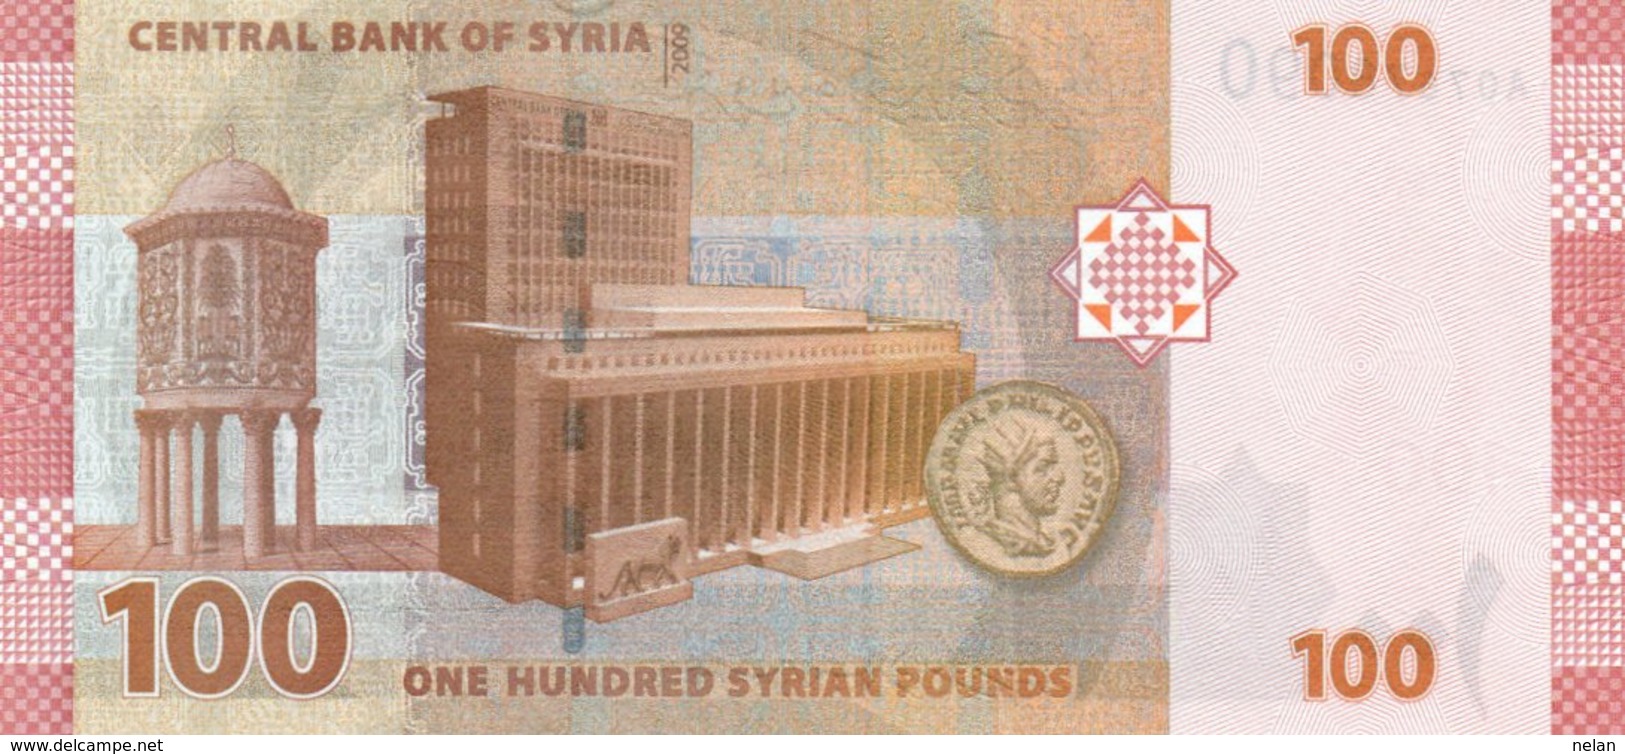 SYRIA 100 SYRIAN POUNDs 2009 P-113a UNC - Siria